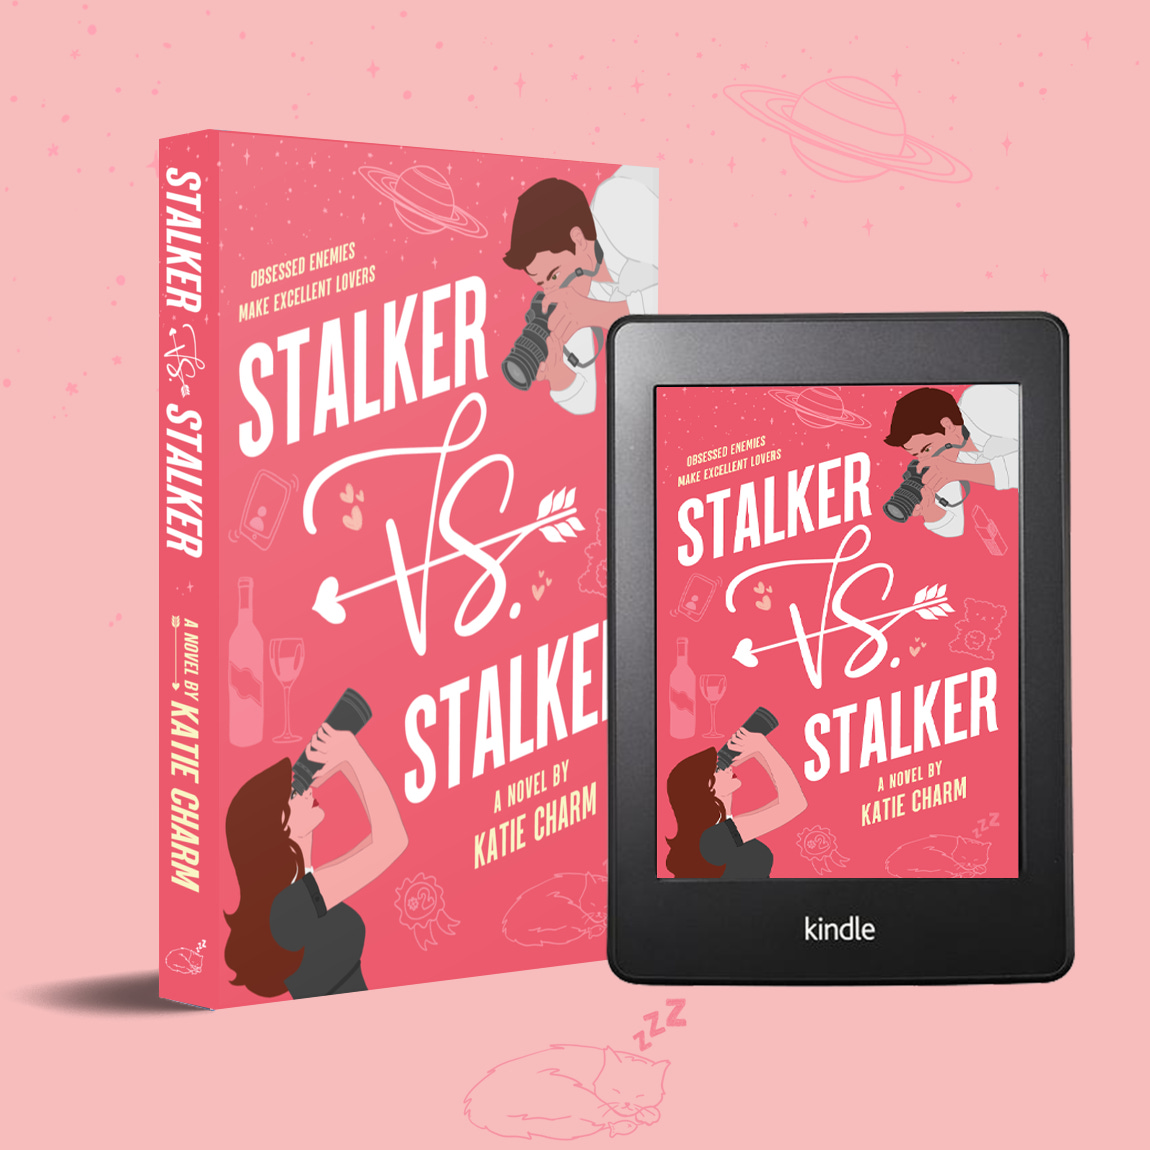 The "Stalker vs. Stalker" paperback pictured beside the ebook edition on a tablet